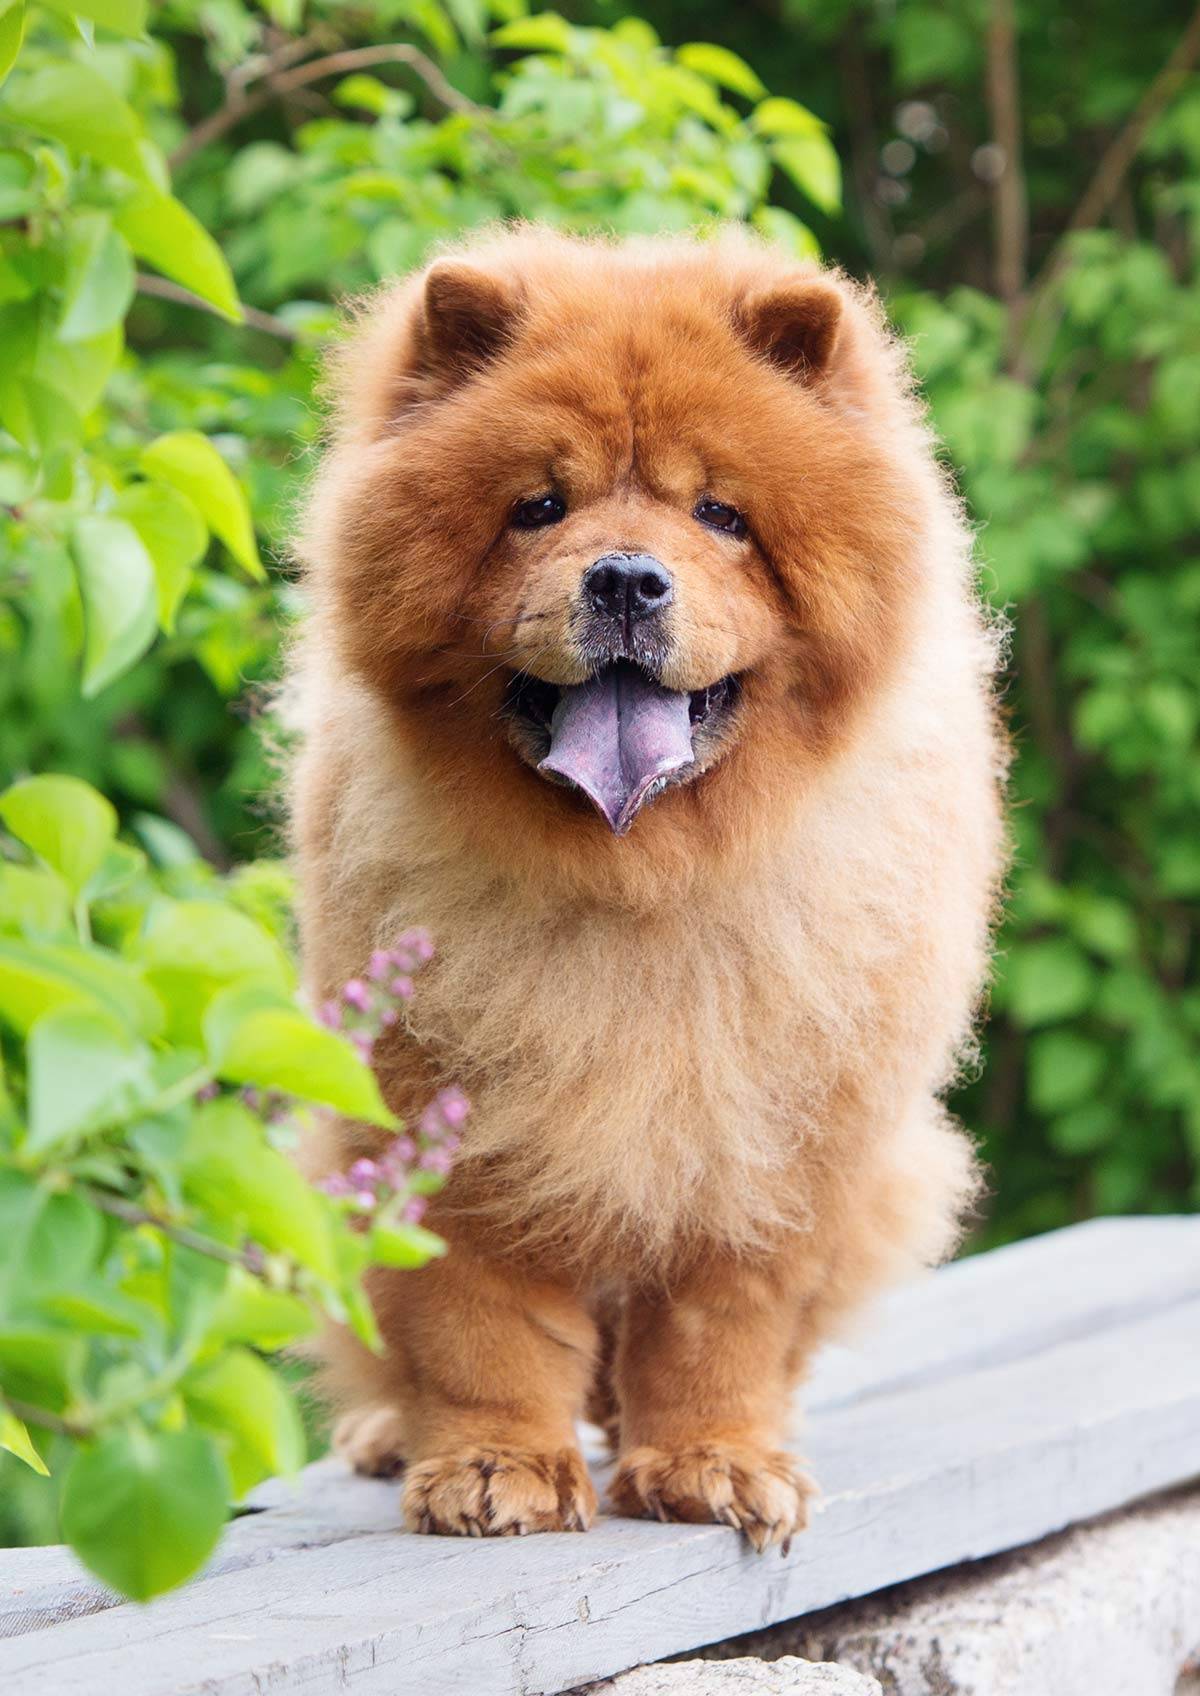 Чау-чау – описание породы собак с синим языком